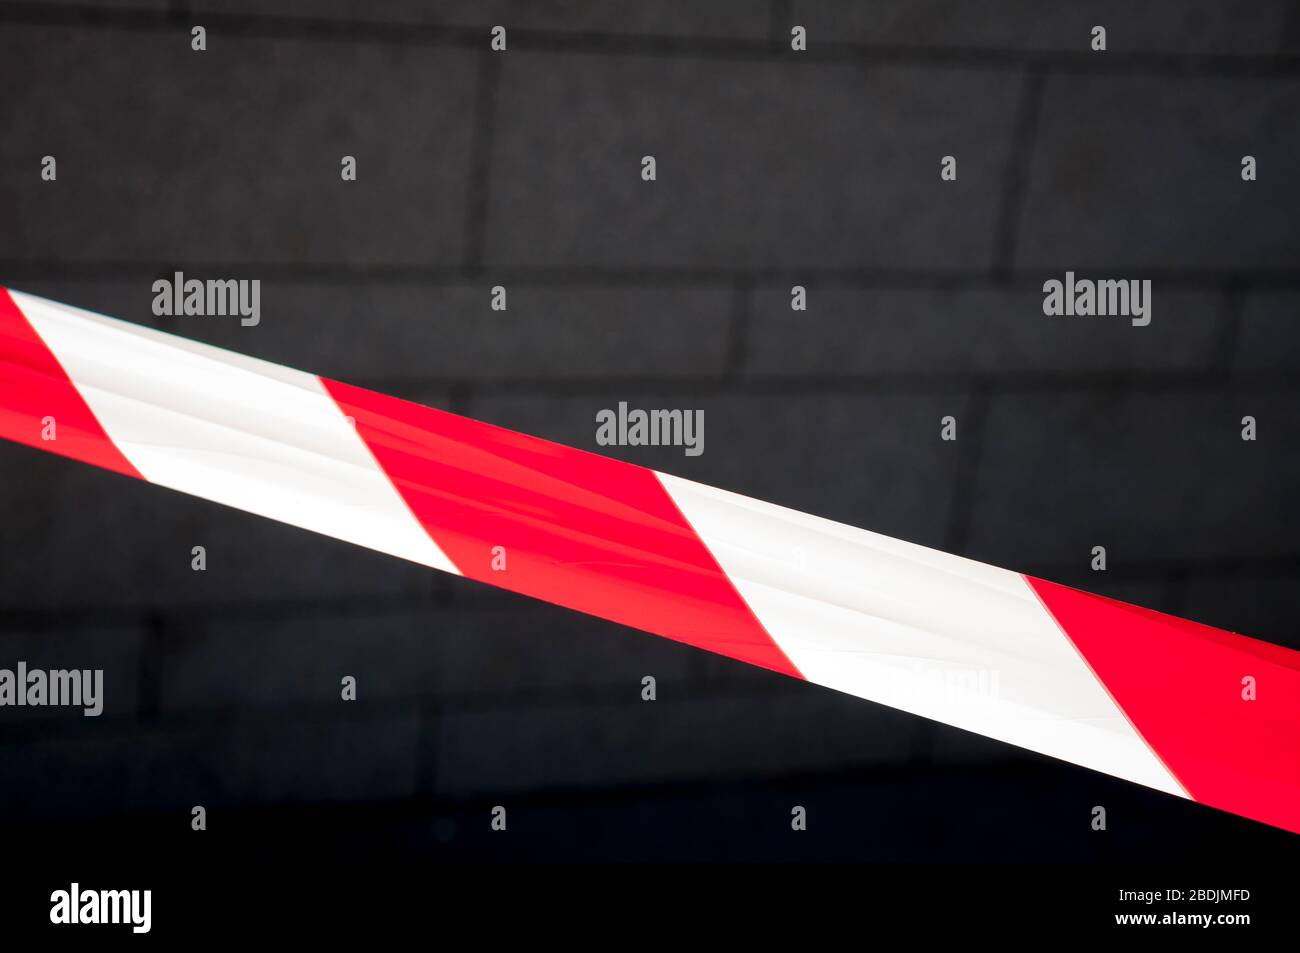 Rotes und weißes Warnband, das sich über den dunklen städtischen Backsteinwand-Hintergrund erstreckt Stockfoto